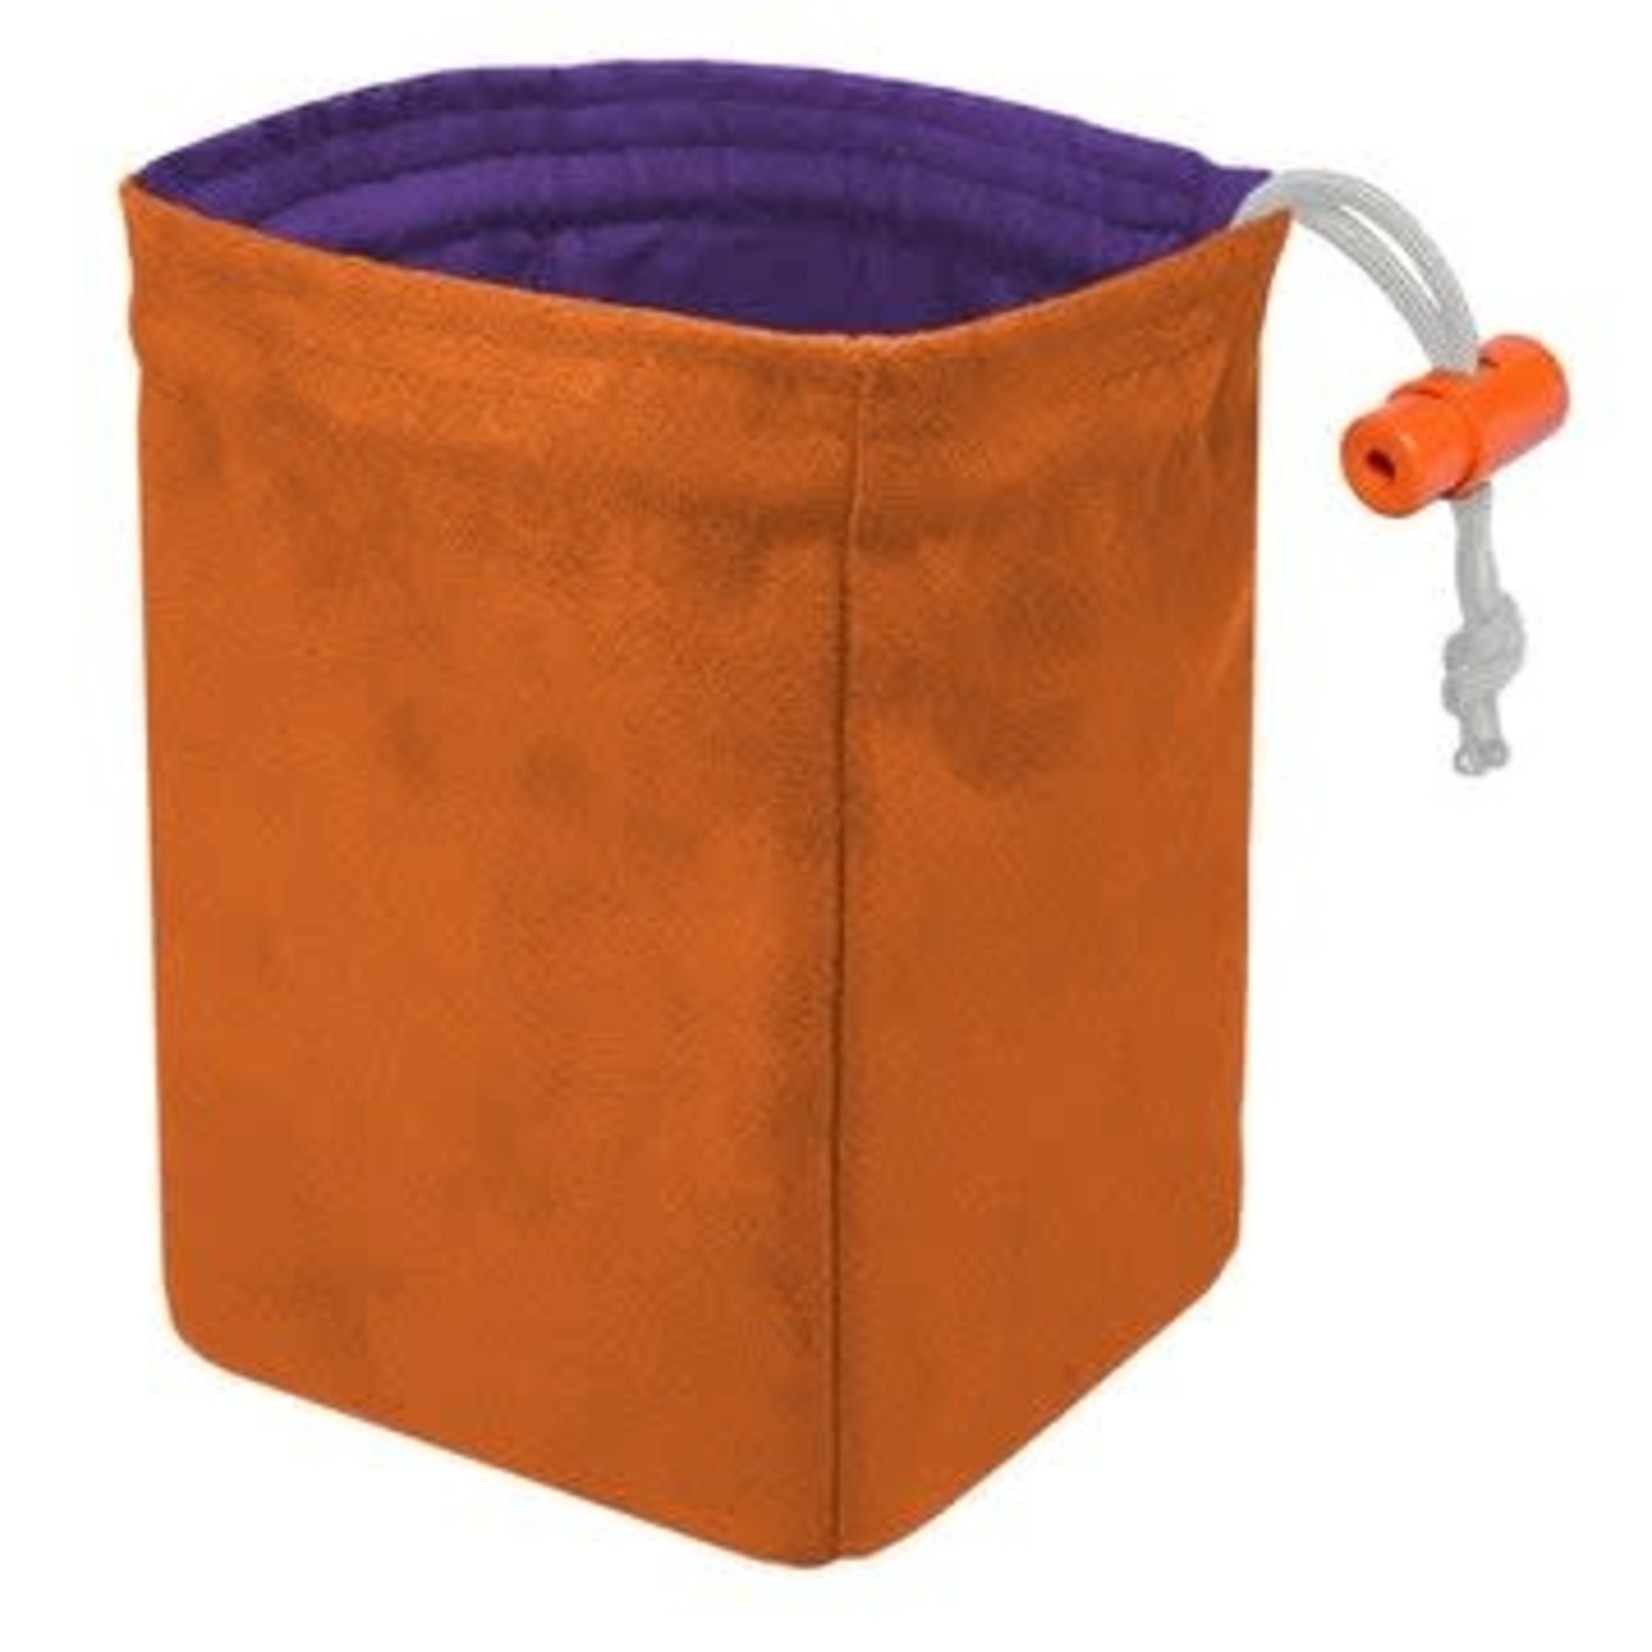 Dice Bag: Classic - Orange and Purple